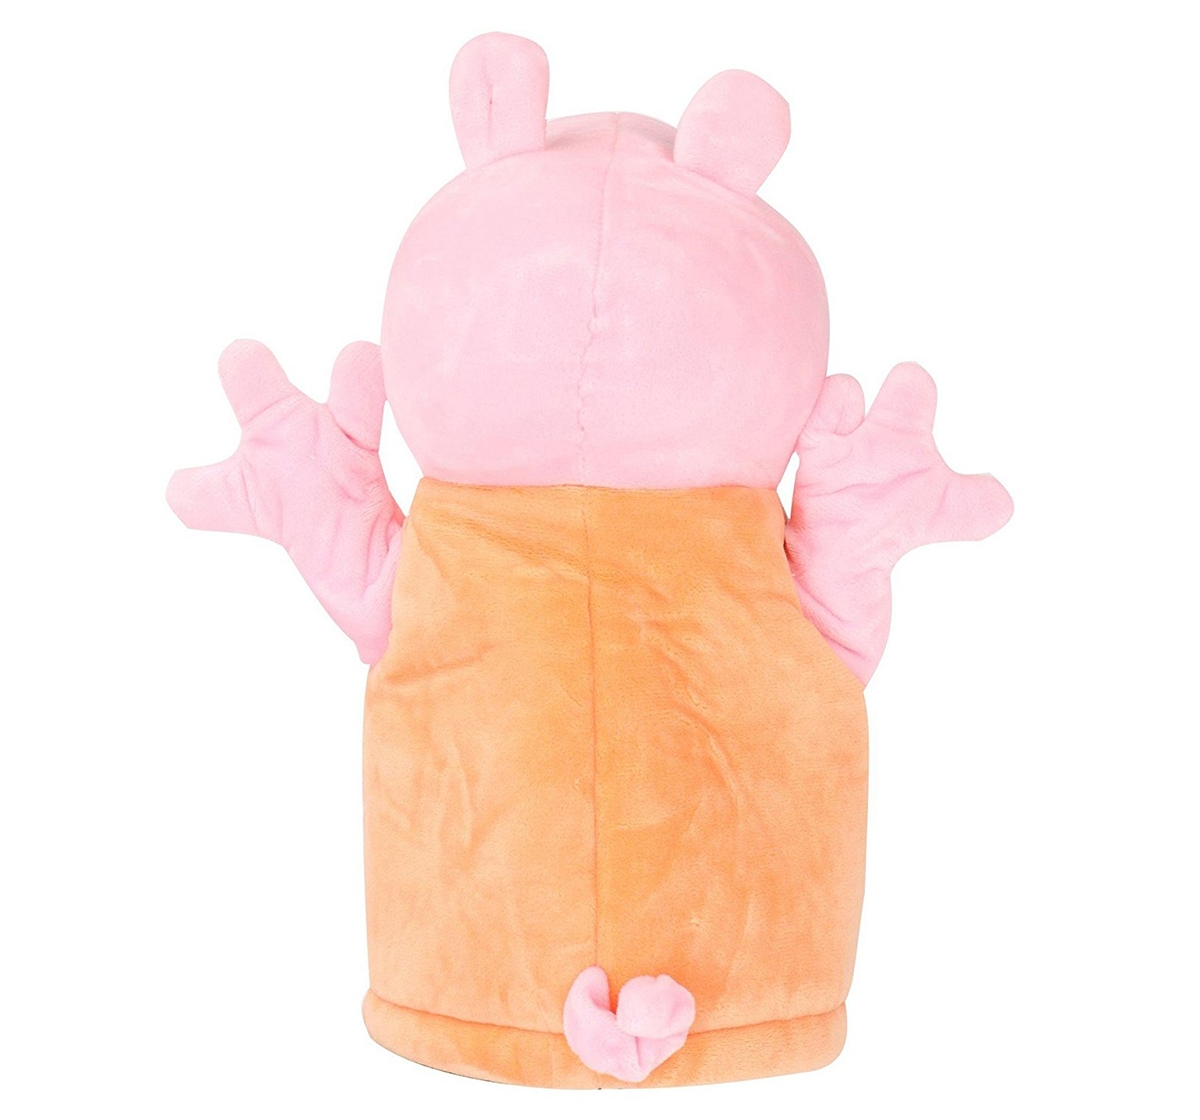 Peppa Pig | Peppa Pig Mummy 26 Cm Soft Toy for Kids age 3Y+ (Orange) 3